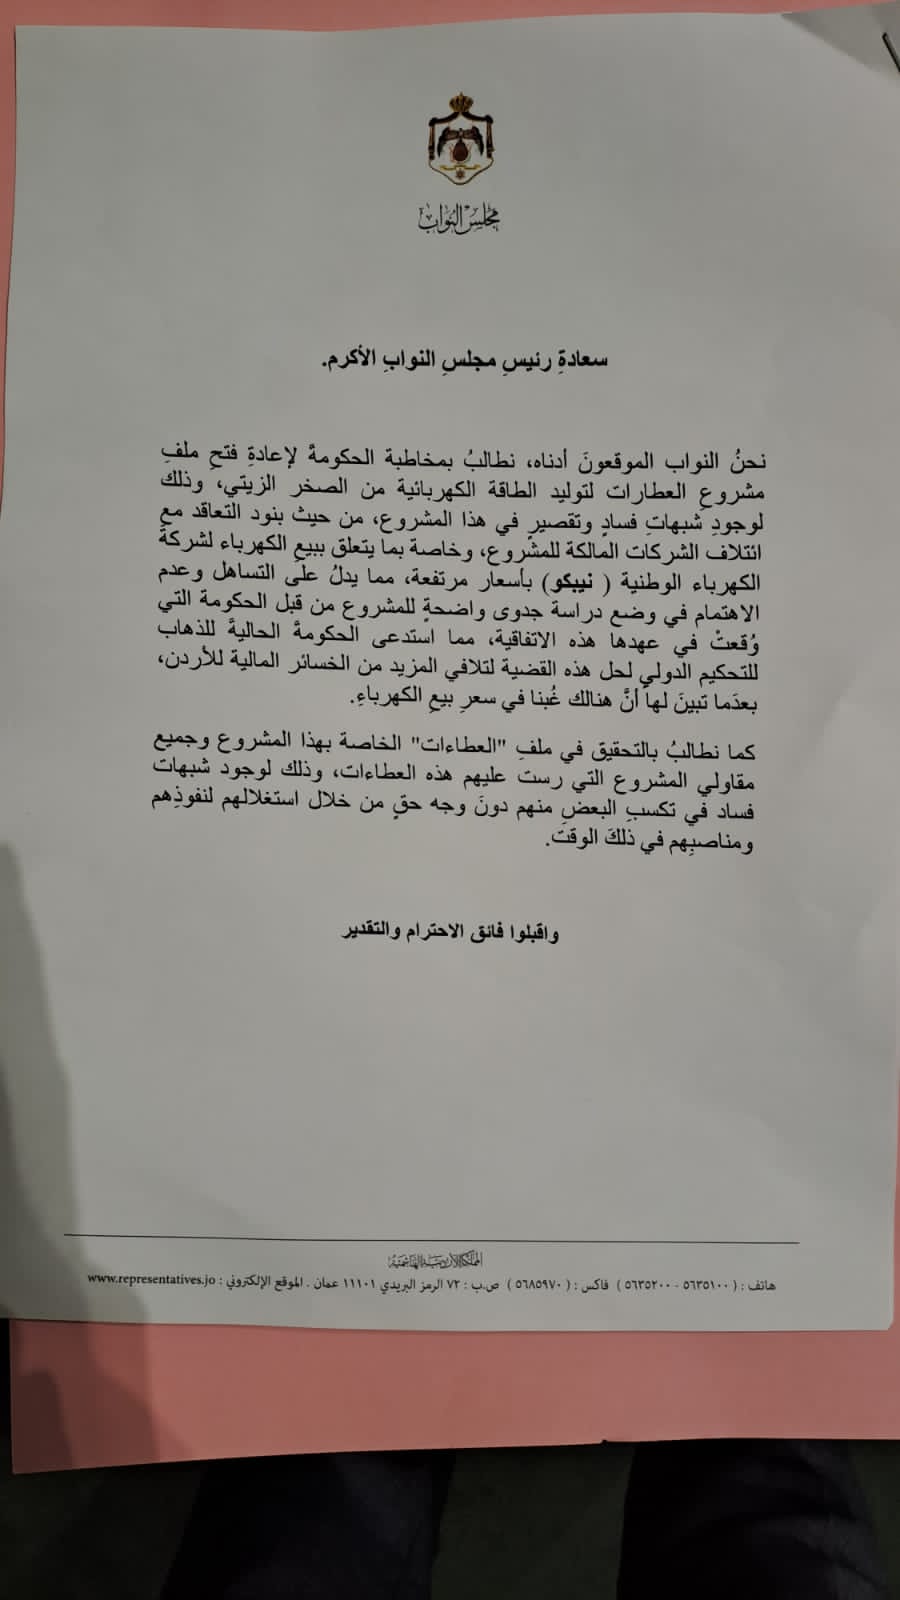 مذكرة نيابية تطالب بإعادة فتح ملف مشروع العطارات